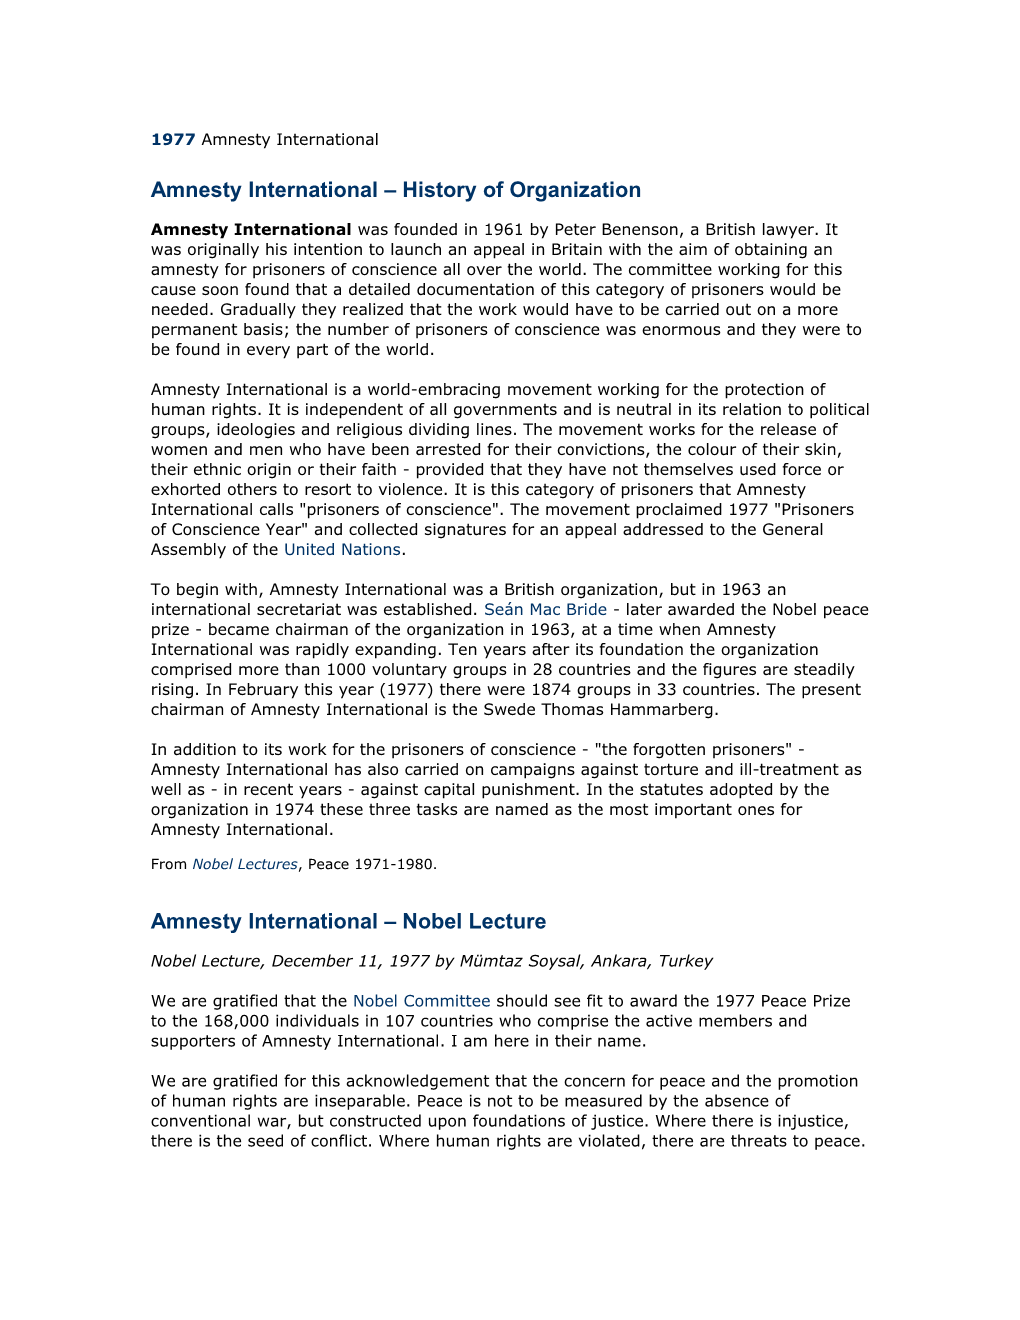 Amnesty International History of Organization